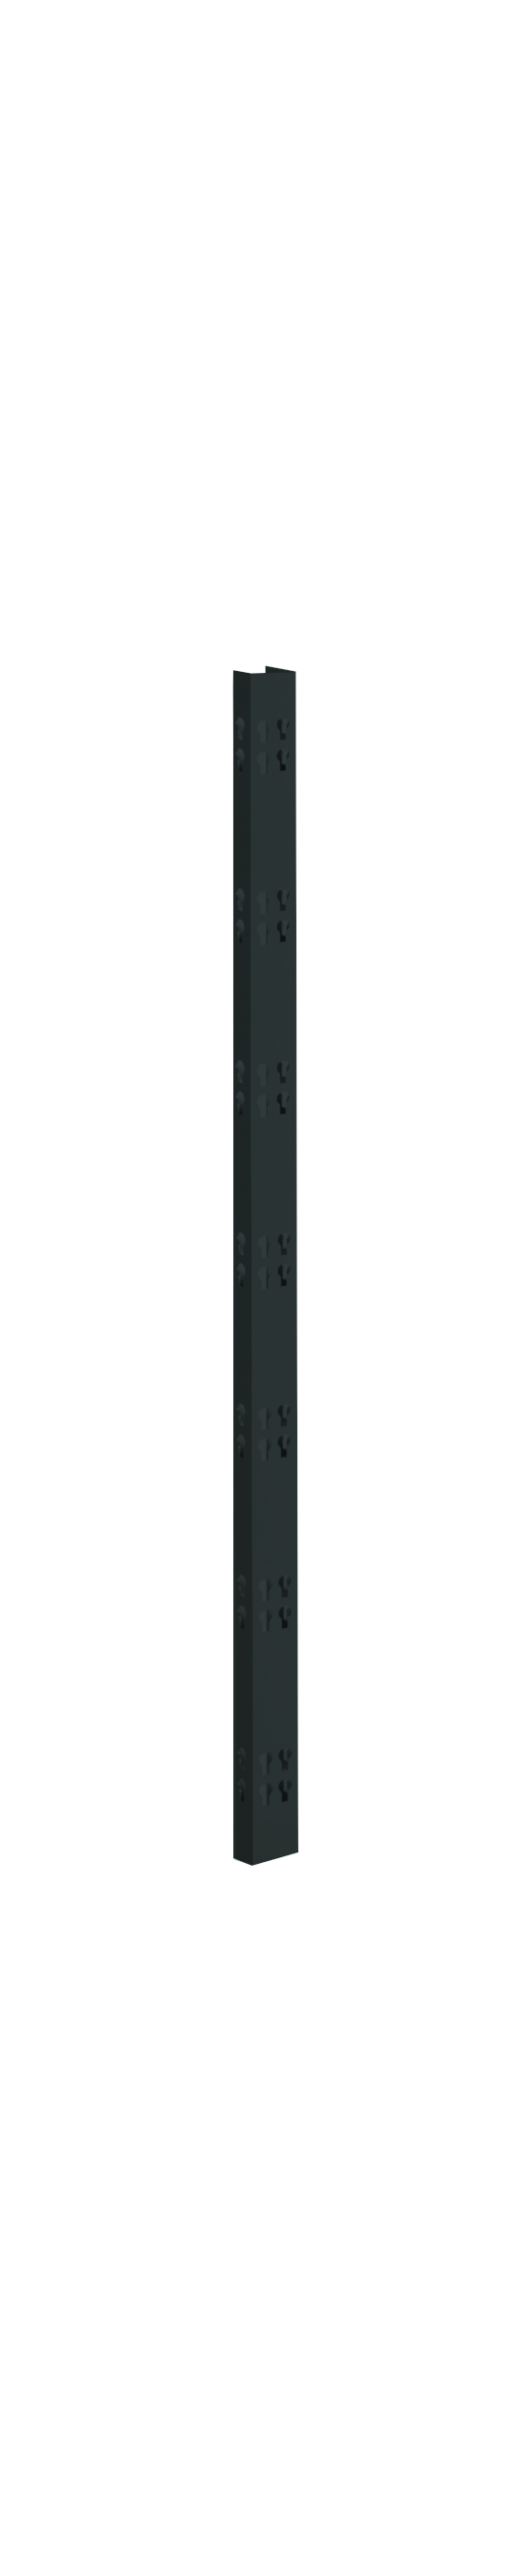 2 Profi-Stecksystem C-Holme, 150x4,2x2,8 cm (HxBxT), schwarz